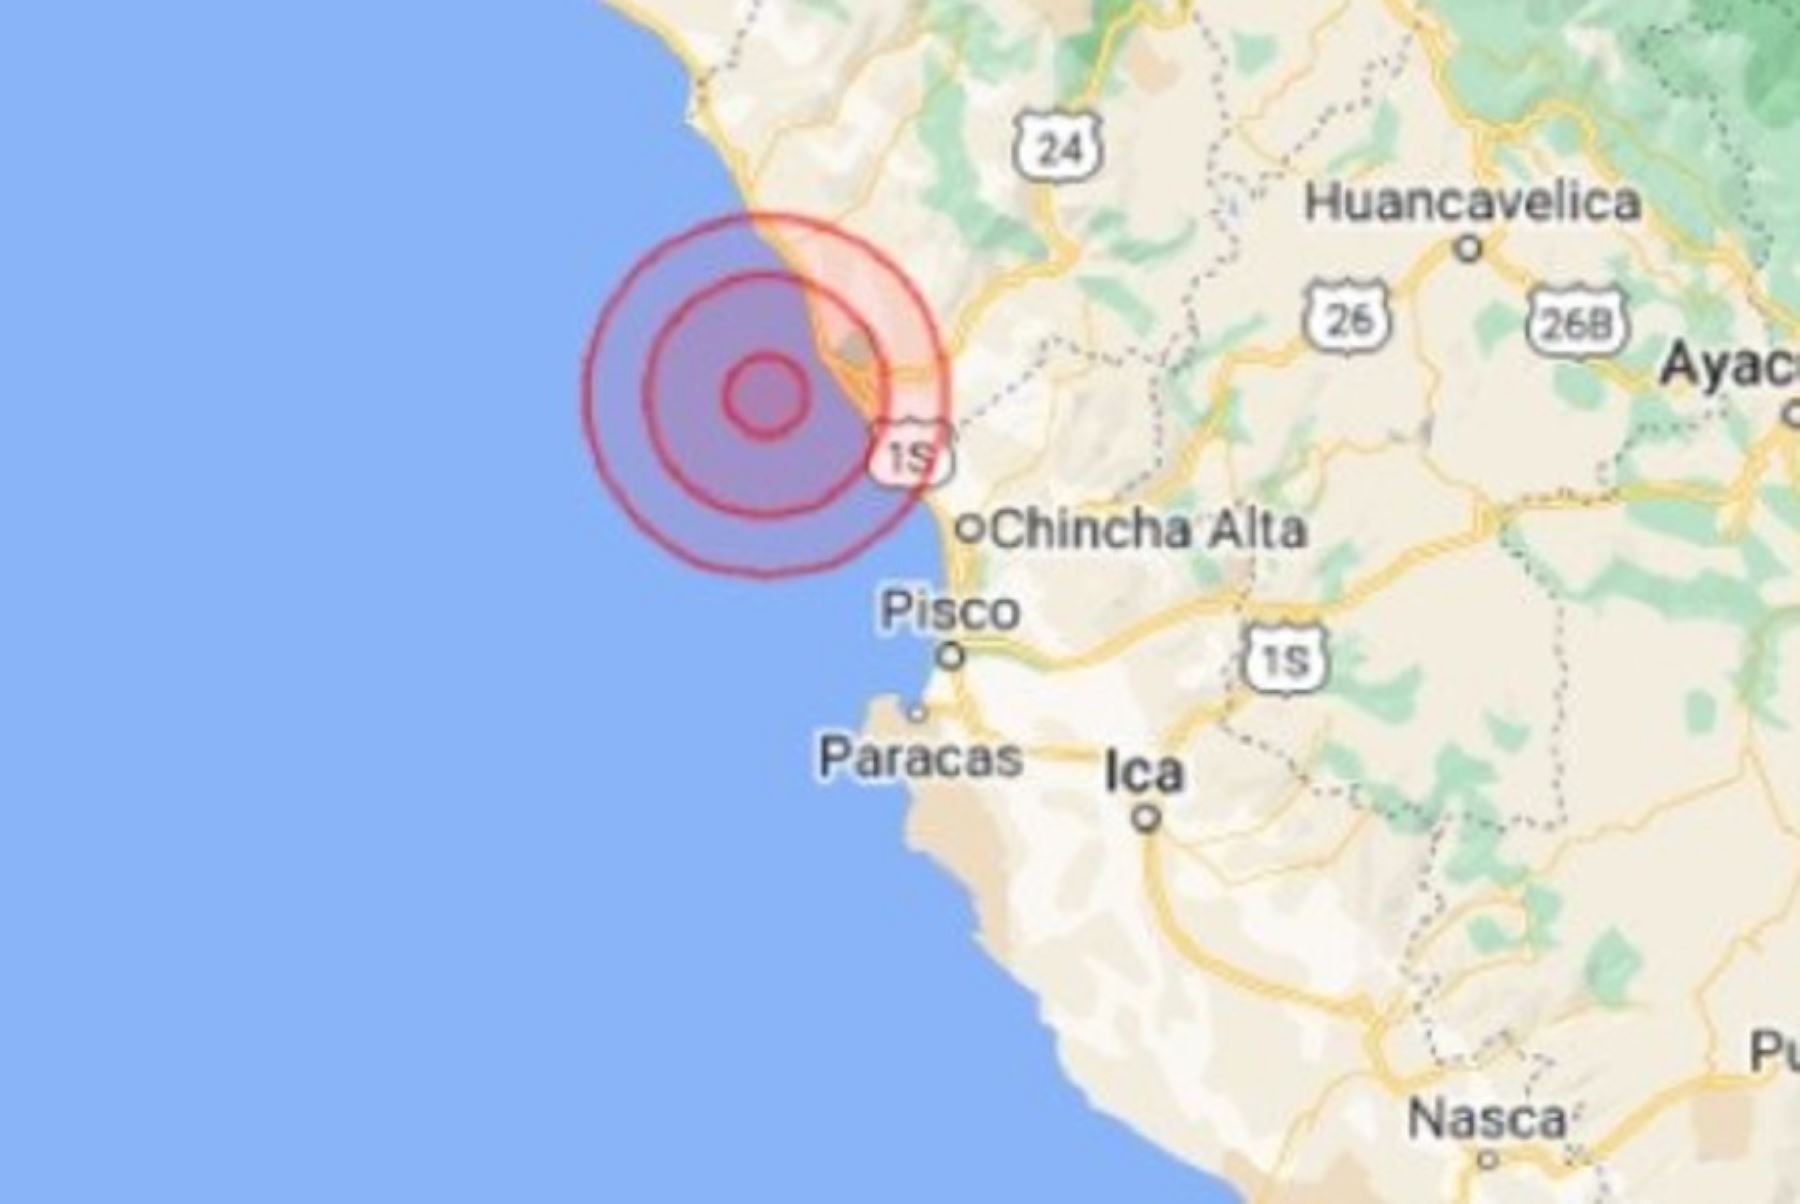 La provincia de Cañete fue sacudida esta tarde por un sismo de magnitud 4.2, con una profundidad de 69 kilómetros, informó el Centro Sismológico Nacional del Instituto Geofísico del Perú.